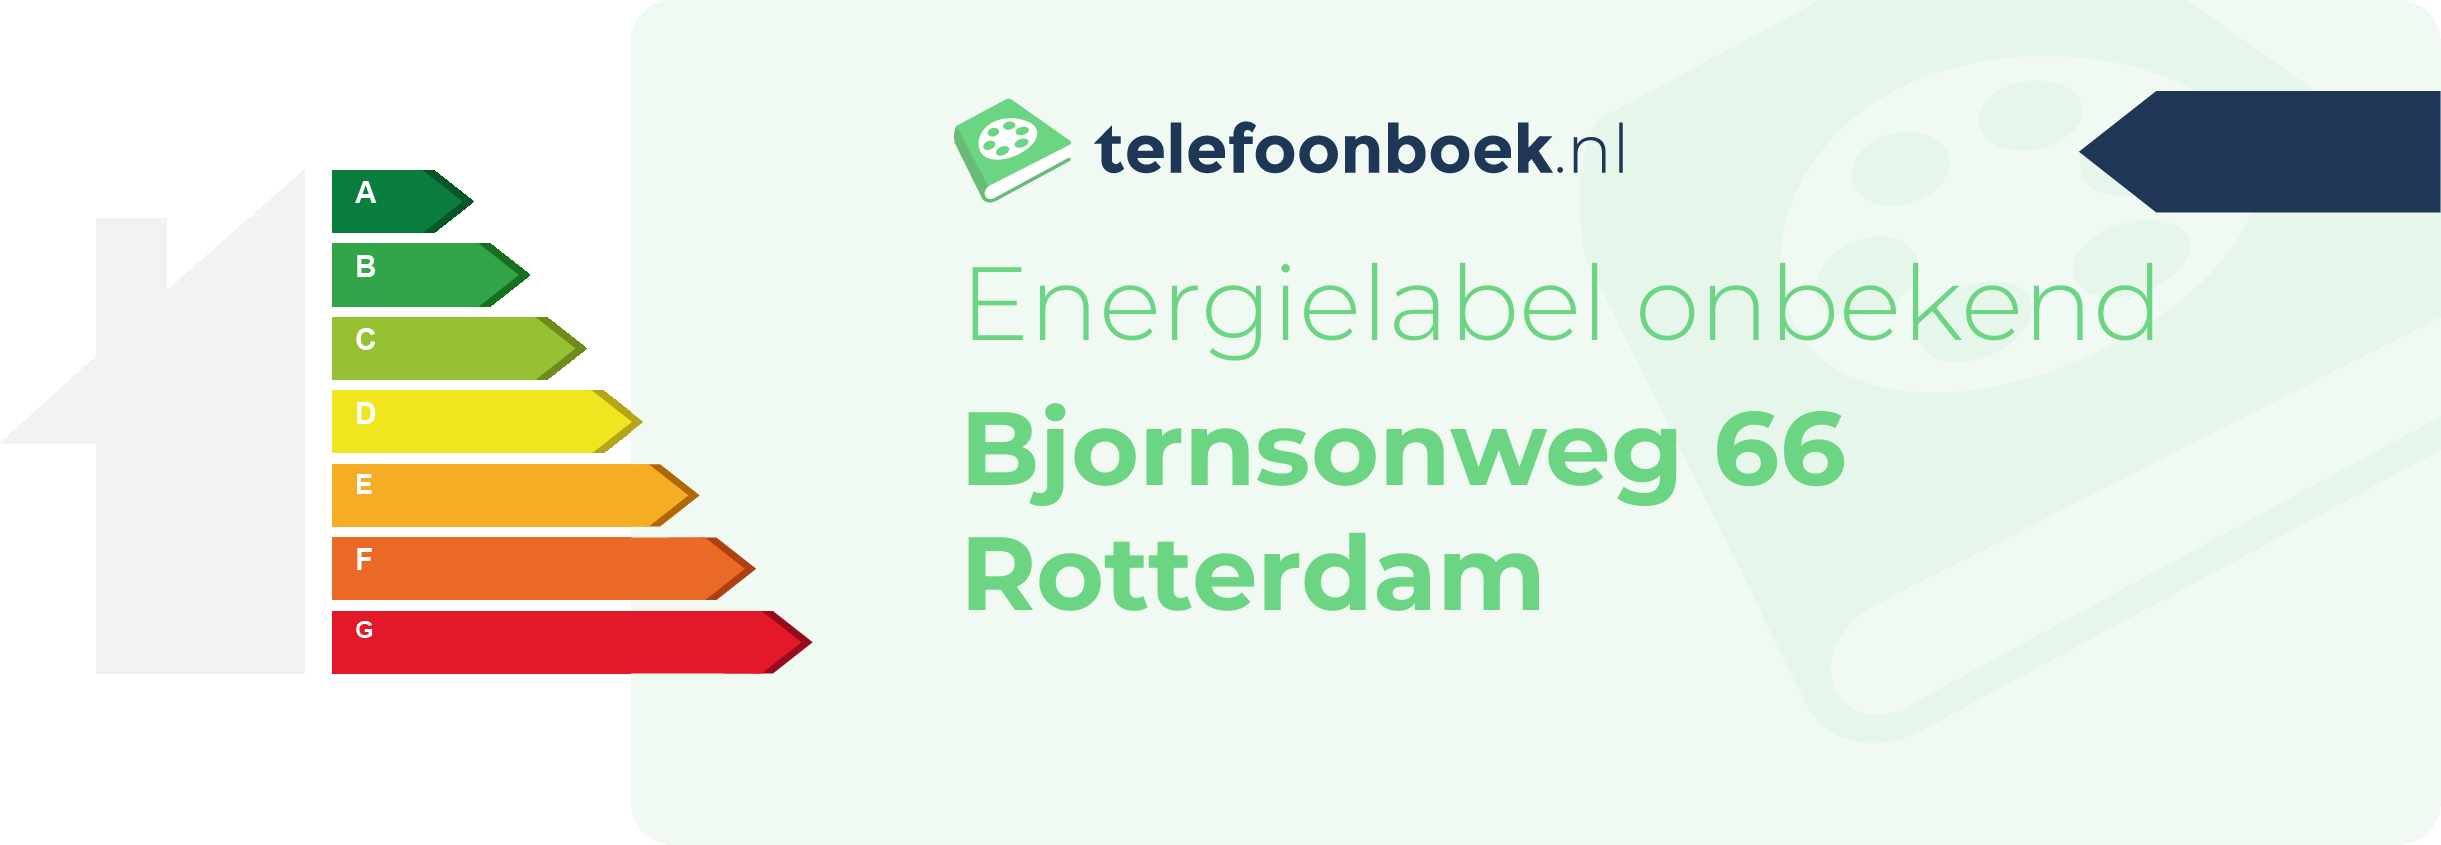 Energielabel Bjornsonweg 66 Rotterdam